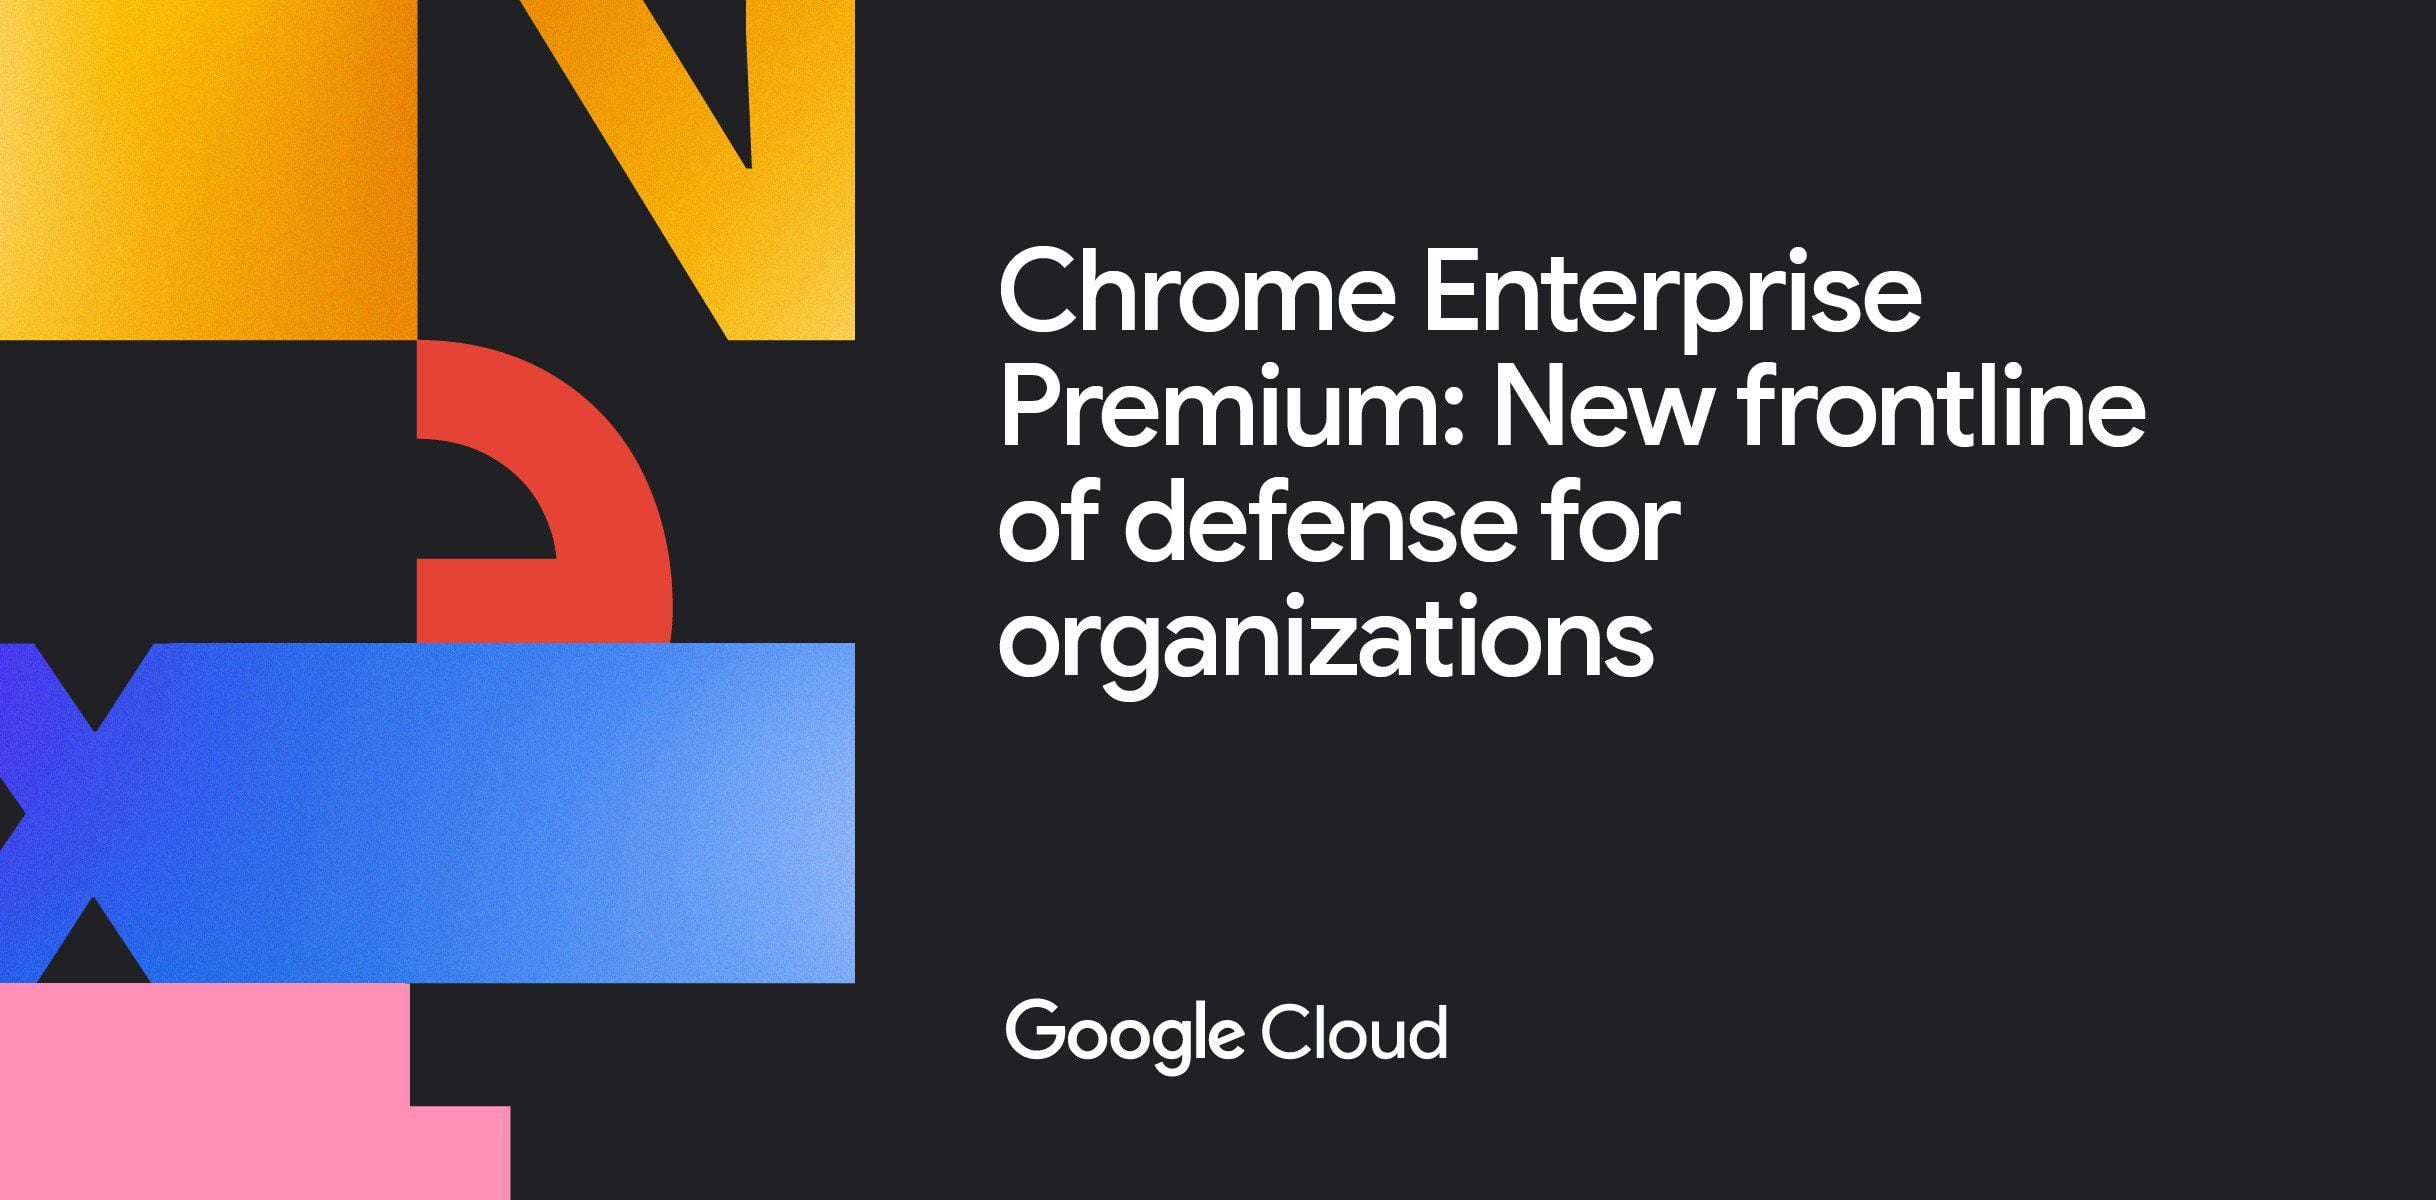 Chrome Enterprise Premium se ofrece a un costo de 6 dólares por usuario al mes, proporcionando características avanzadas de seguridad, como el escaneo automático de malware y un filtro integrado que bloquea el acceso a sitios web basados en su categoría.